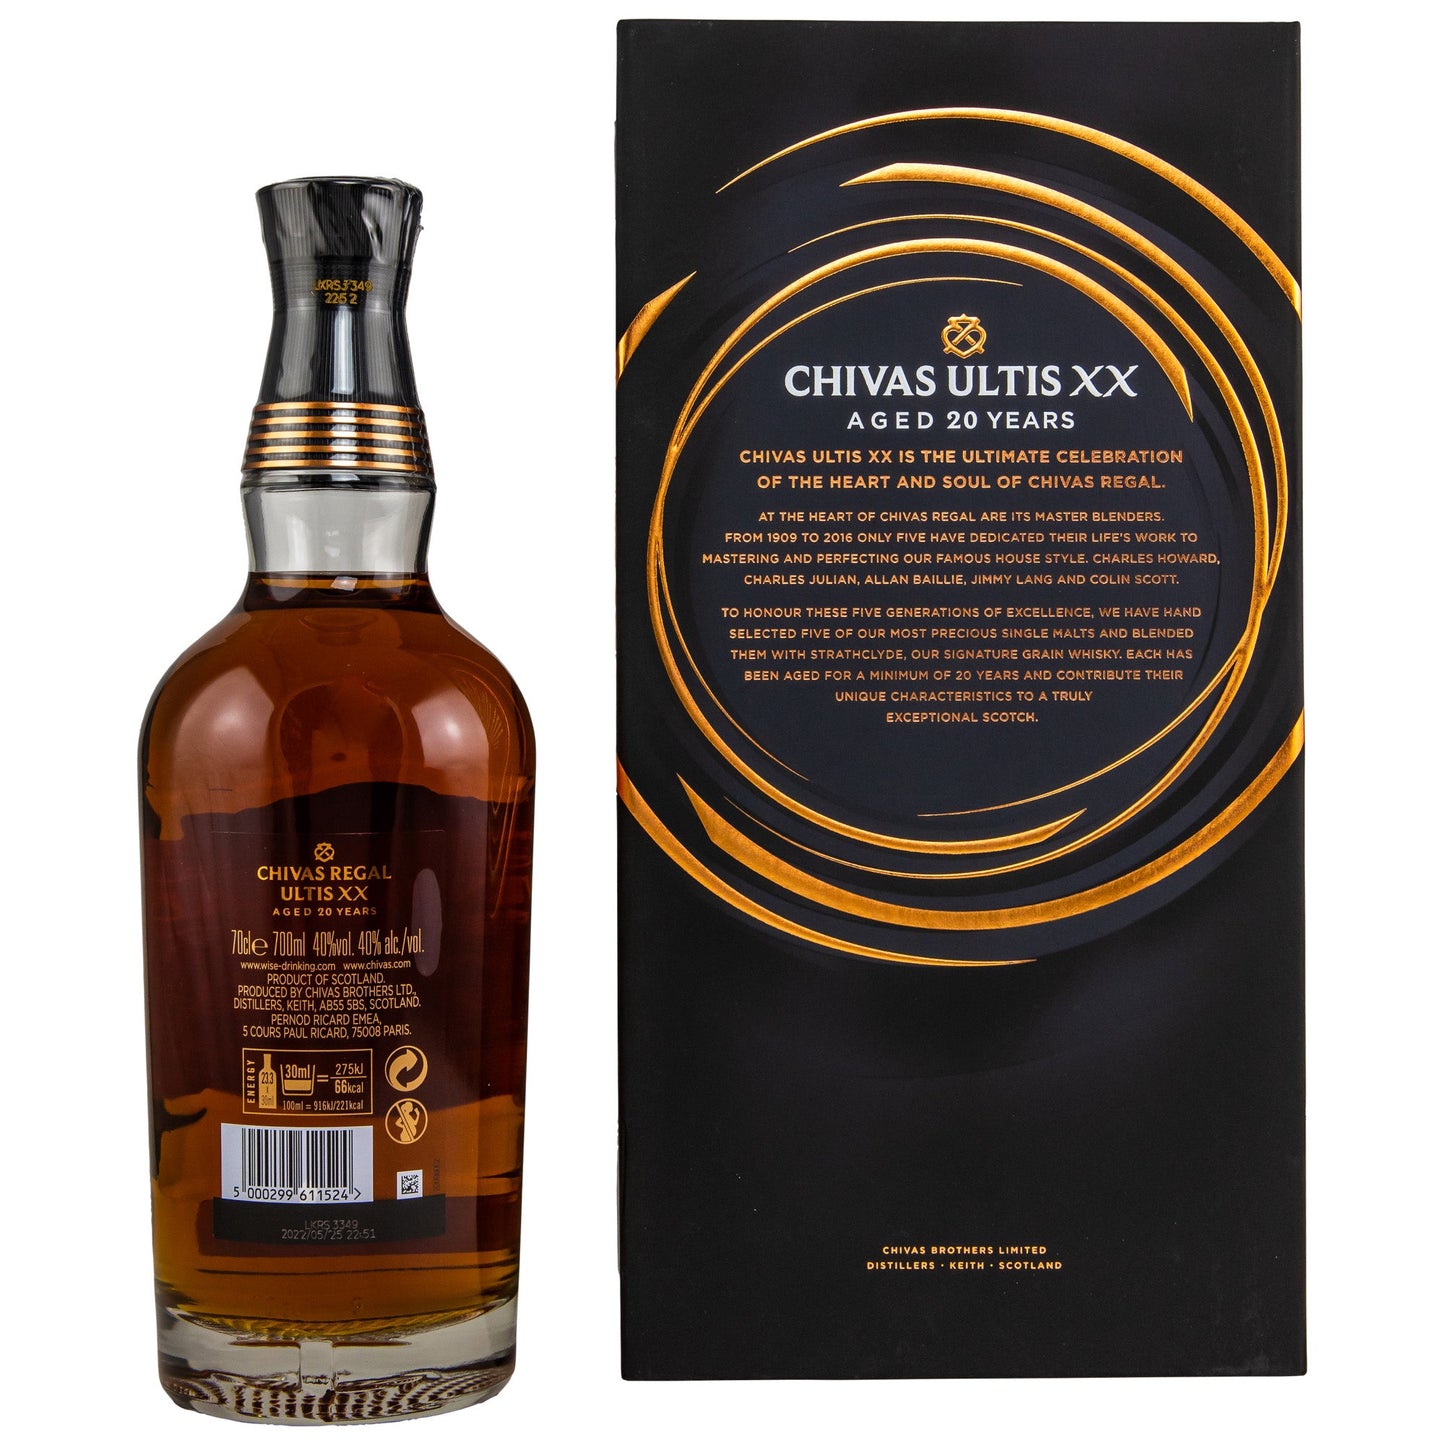 Chivas Regal | 20 Jahre | XX | Ultis | Blended Scotch Whisky | 0,7l | 40%GET A BOTTLE